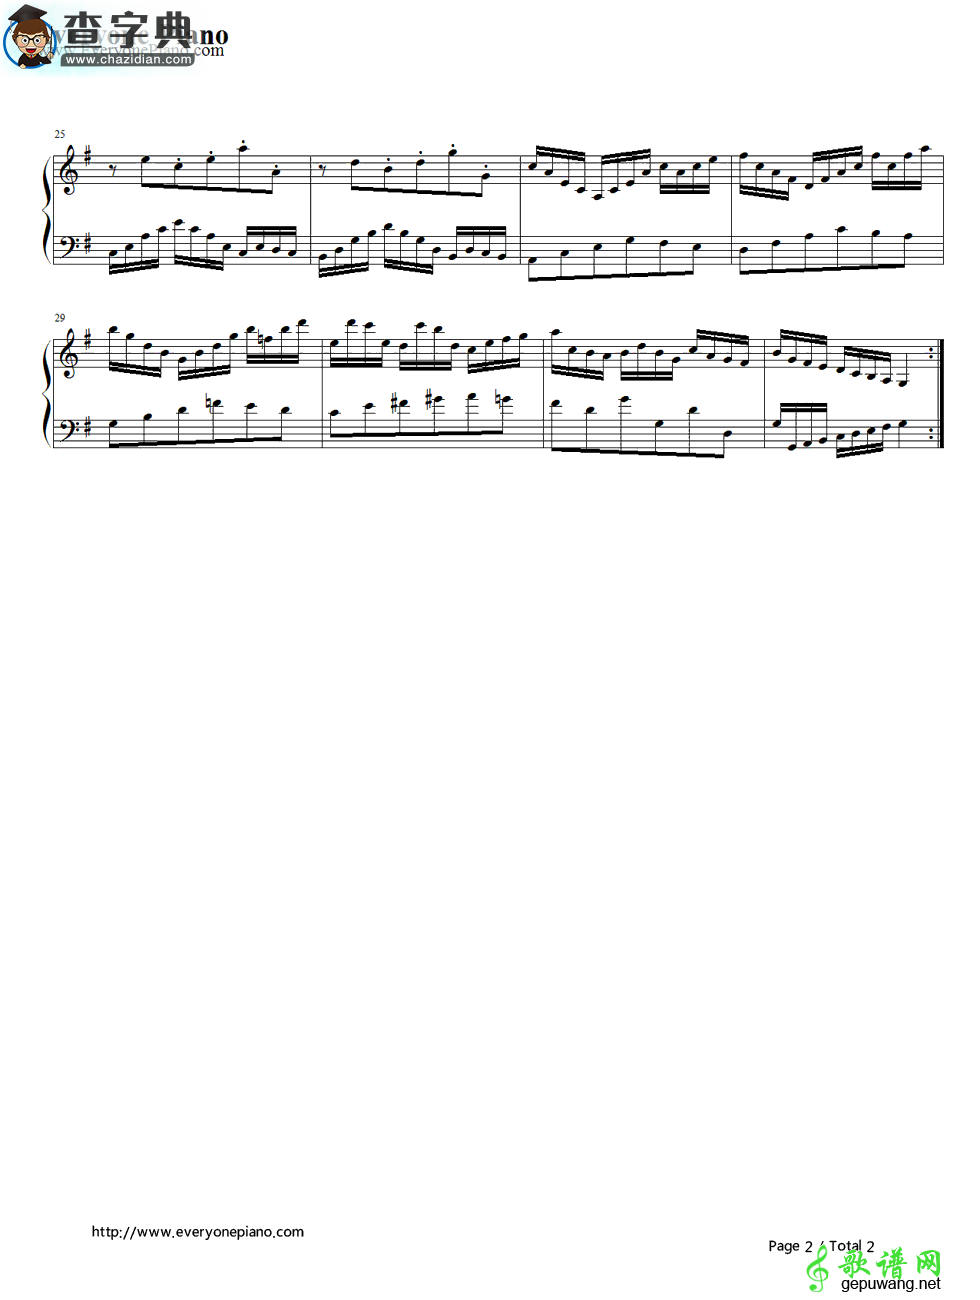 【Goldberg Variations钢琴谱】五线谱